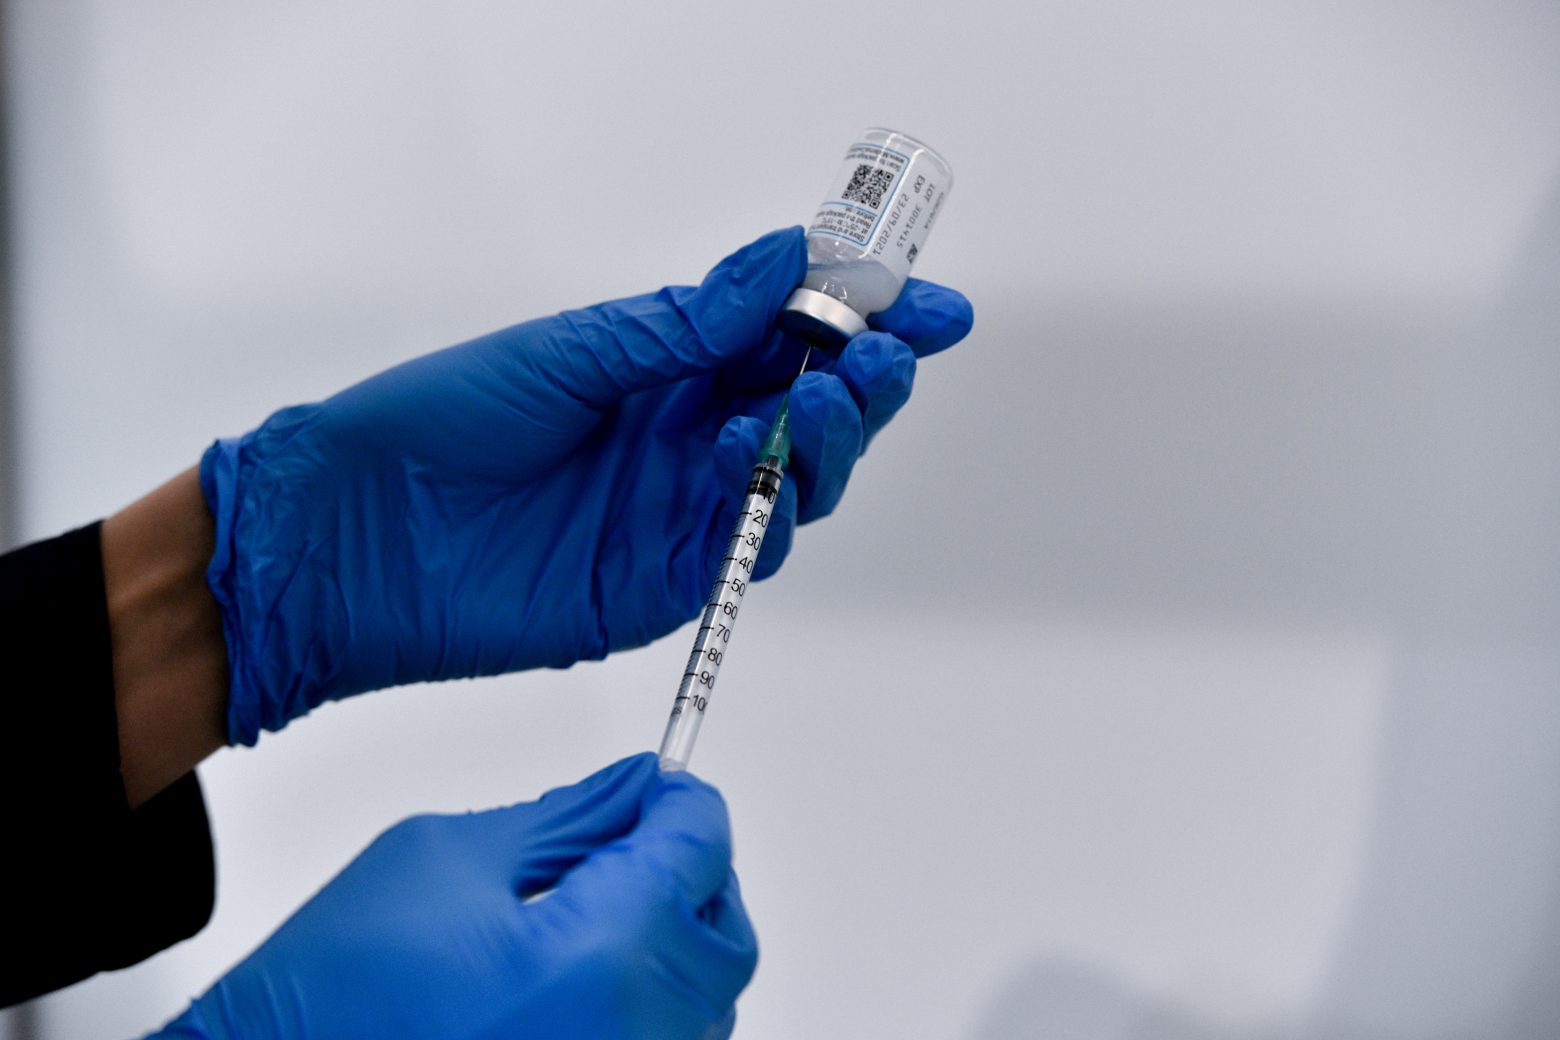 Θεμιστοκλέους : Πόσα εμβόλια αναμένονται από κάθε εταιρεία - Το ποσοστό ακυρώσεων για εμβολιασμό με AstraZeneca